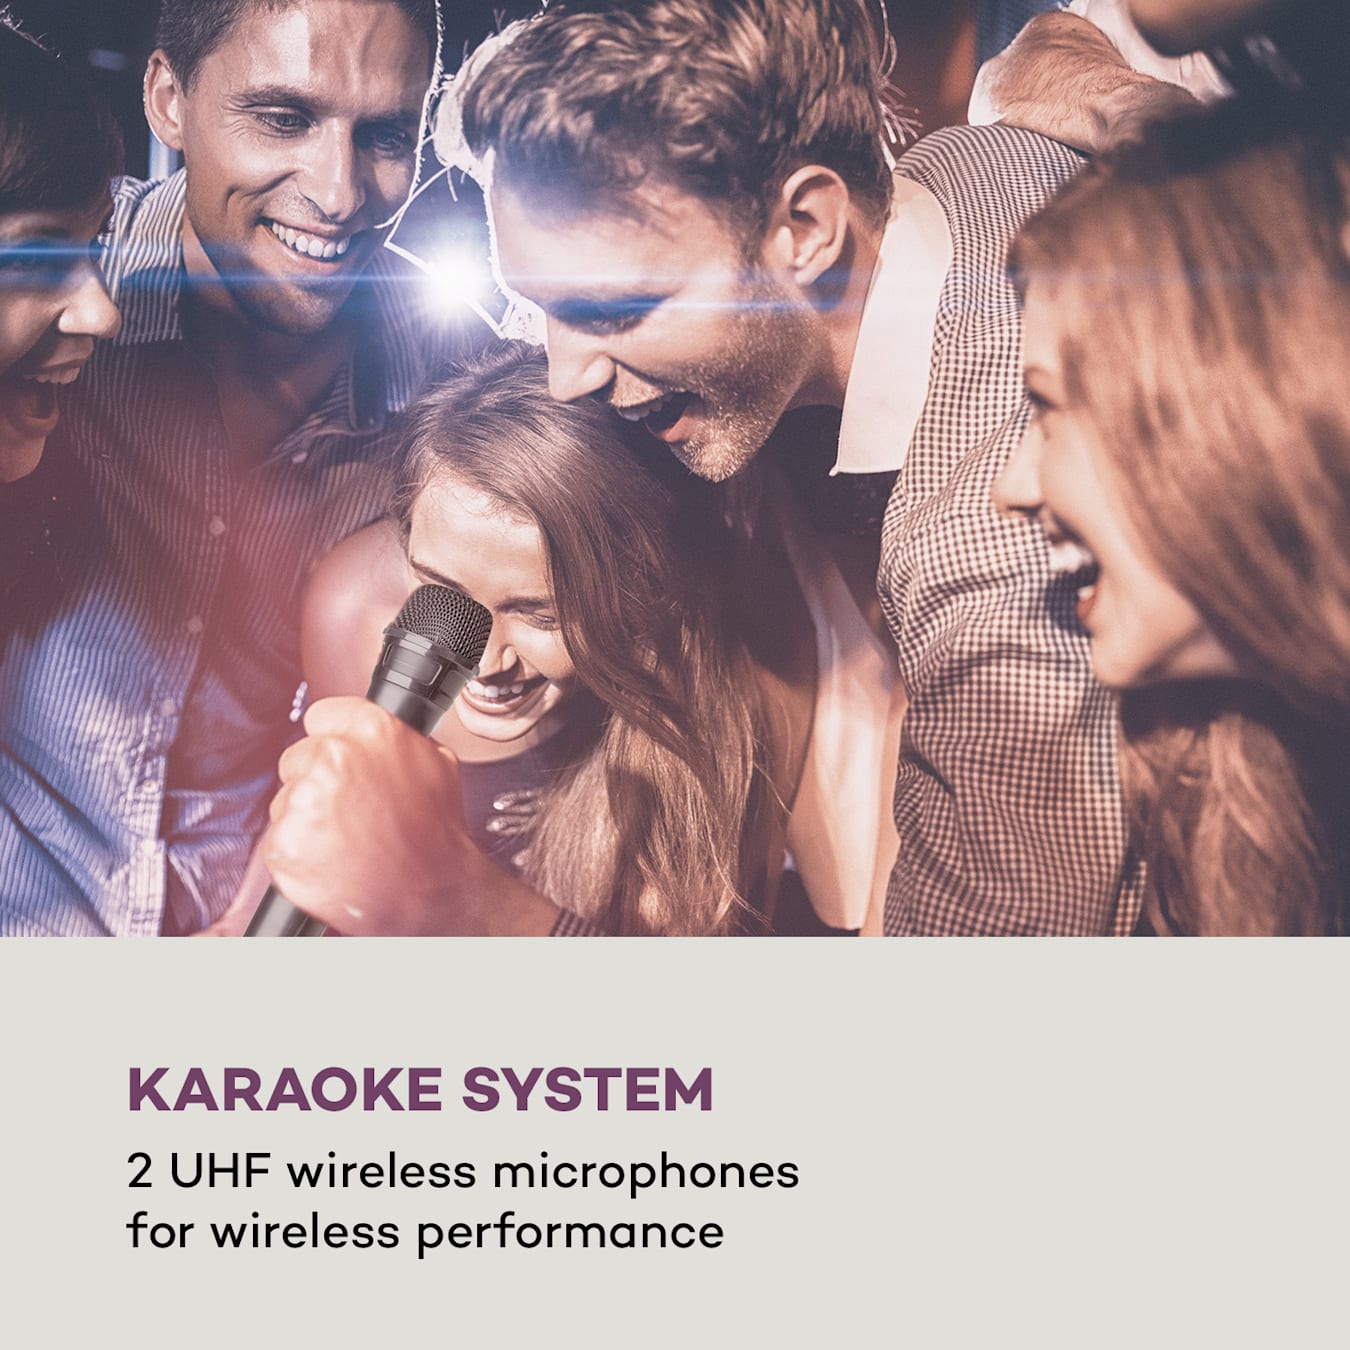 Système karaoké Pro Spin 10, Écran tactile 14,1 (30,5 cm), 2 x 8 (20  cm) caisson de basses, Tweeter 3 (7,5 cm), WiFi, 2 microphones UHF, Fonction Bluetooth, USB / carte TF, HDMI, AUX